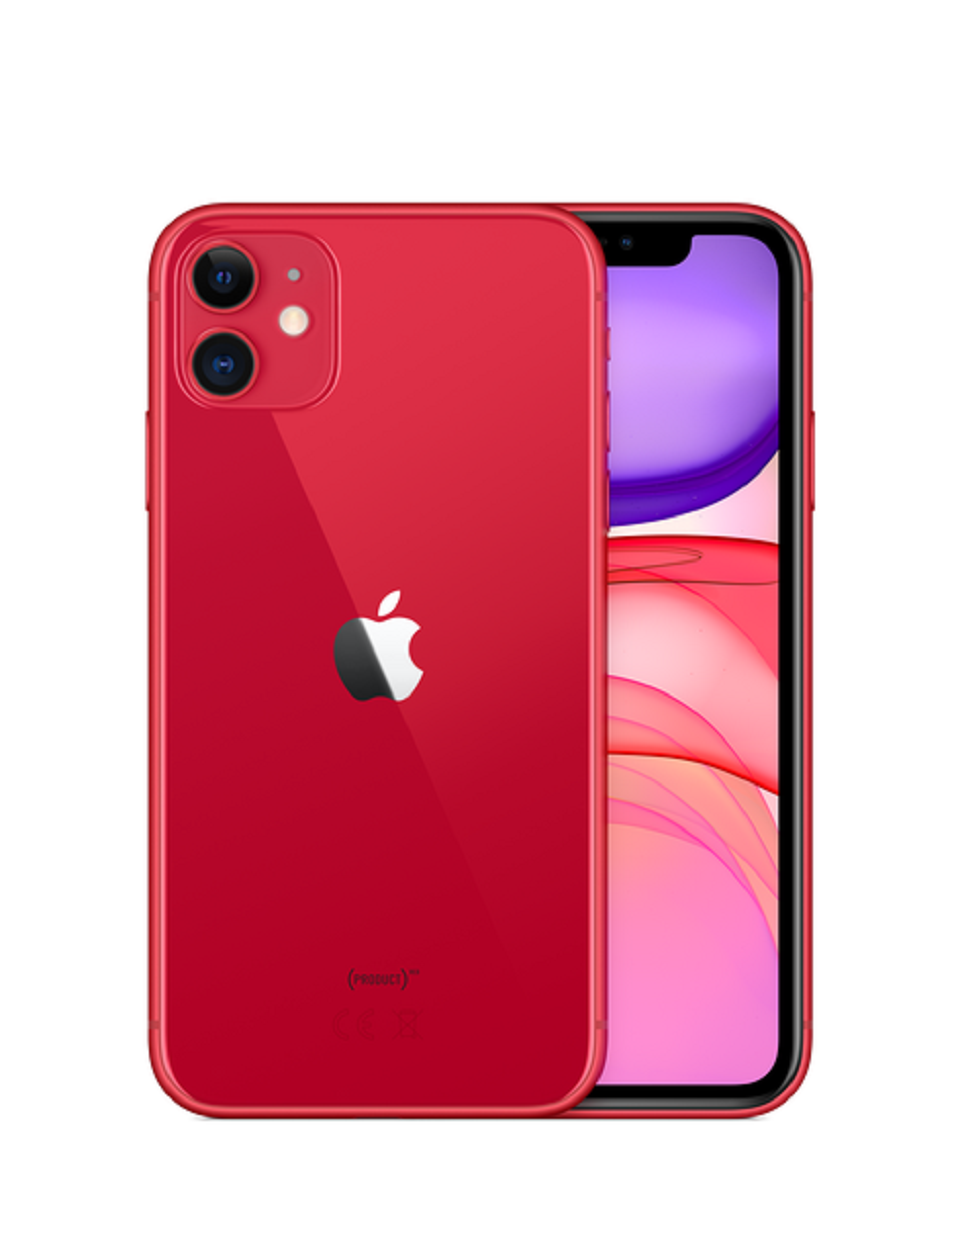 Айфон 11 полностью. Apple iphone 11 128gb (product)Red. Iphone 11 64gb Red. Iphone 11 64 ГБ. Apple iphone 11 64gb красный.